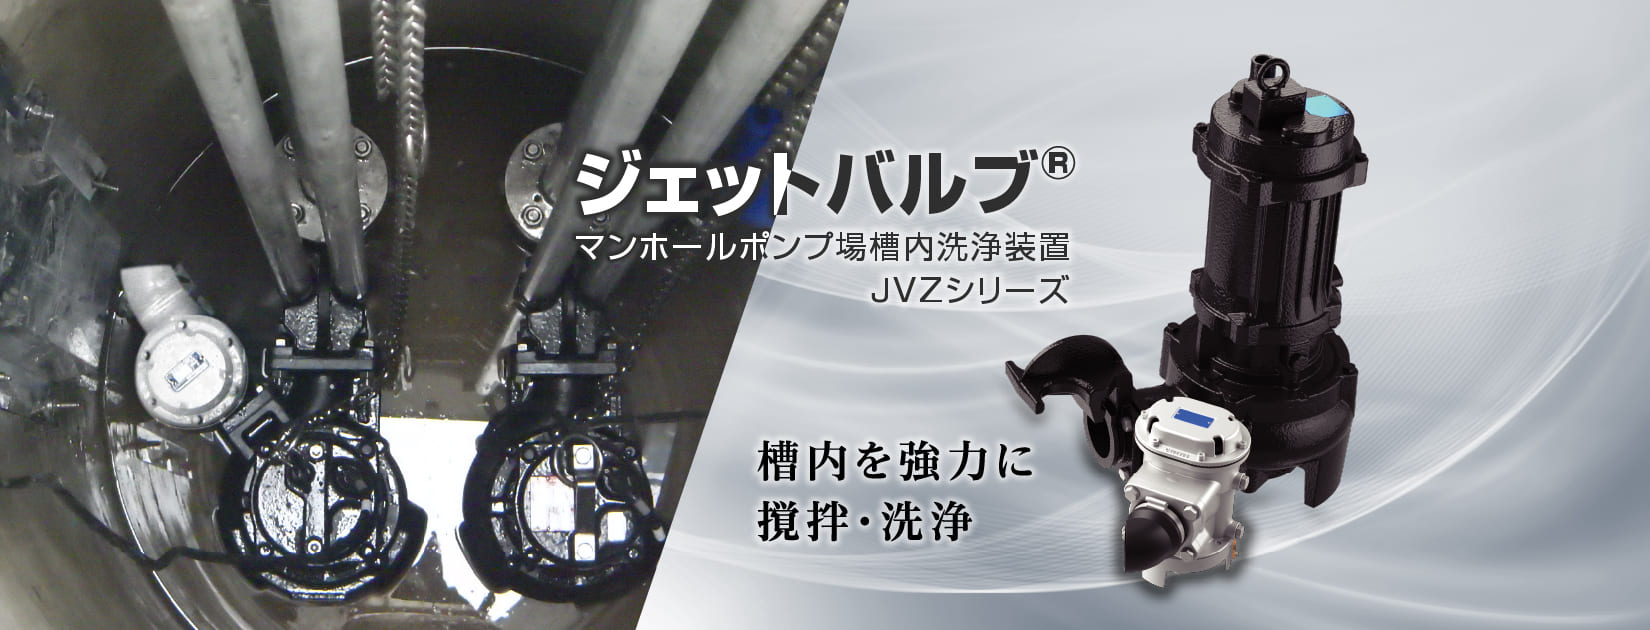 ジェットバルブ®︎ マンホールポンプ場槽内洗浄装置JVZシリーズ 槽内を強力に撹拌・洗浄